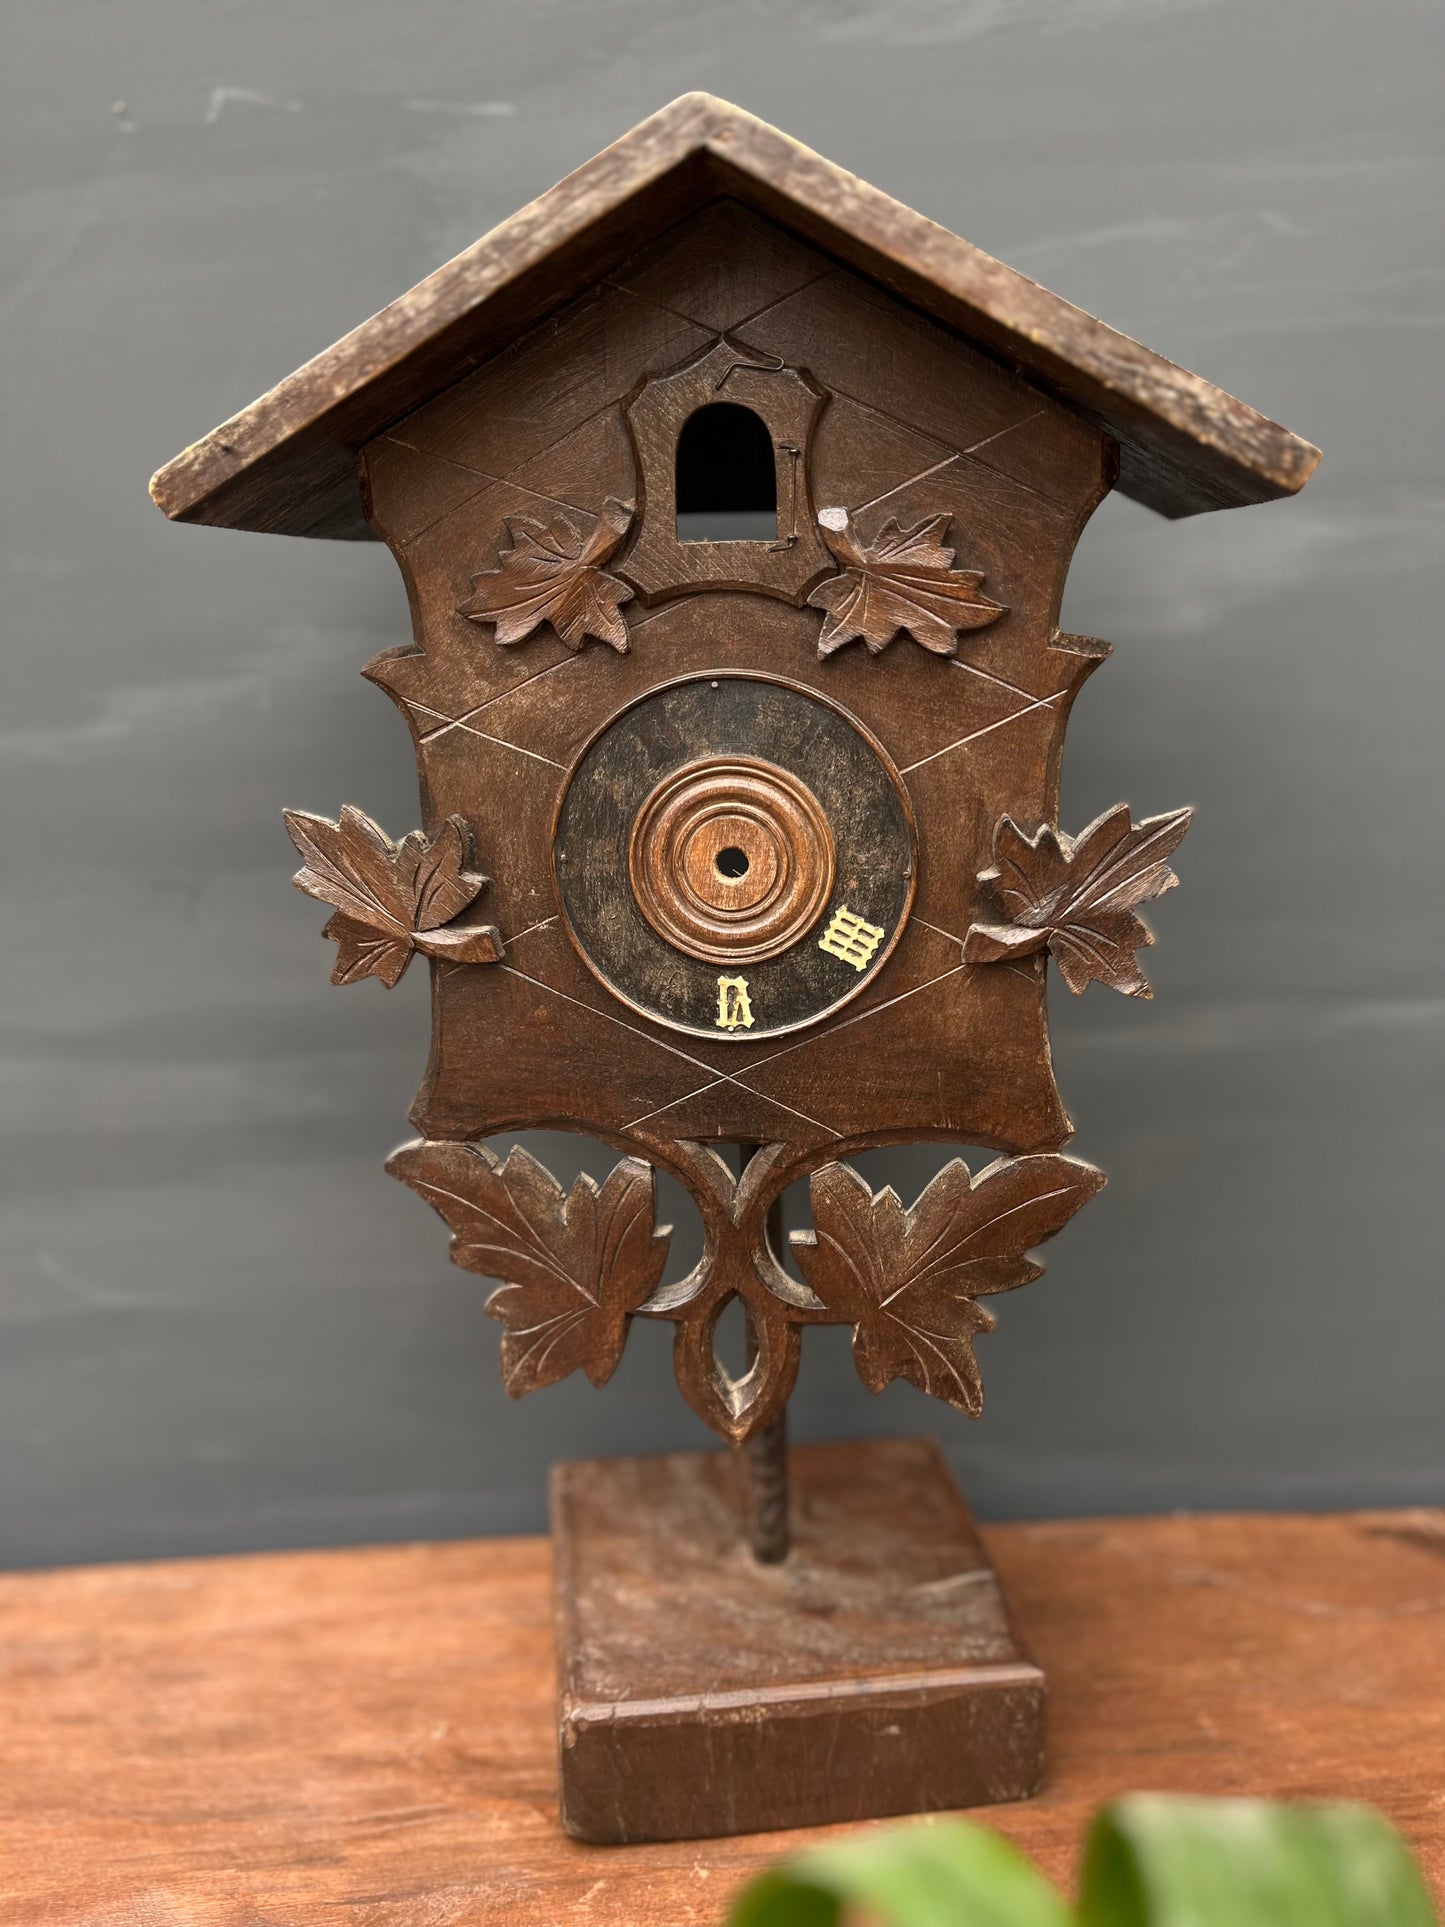 Vintage Wooden Bird House